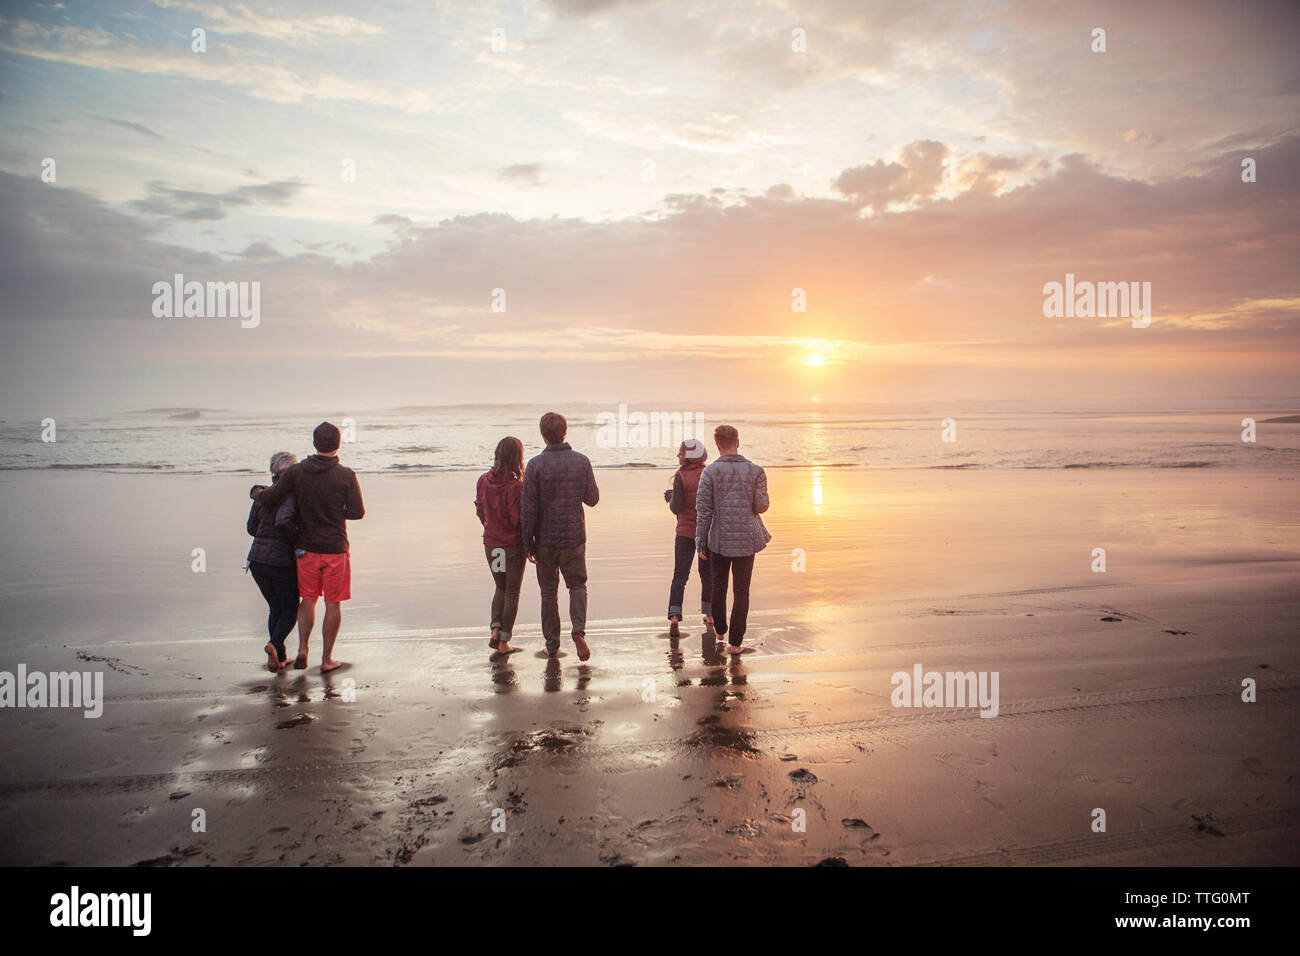 Rückansicht der Paare zu Fuß am Ufer am Strand bei Sonnenuntergang Stockfoto